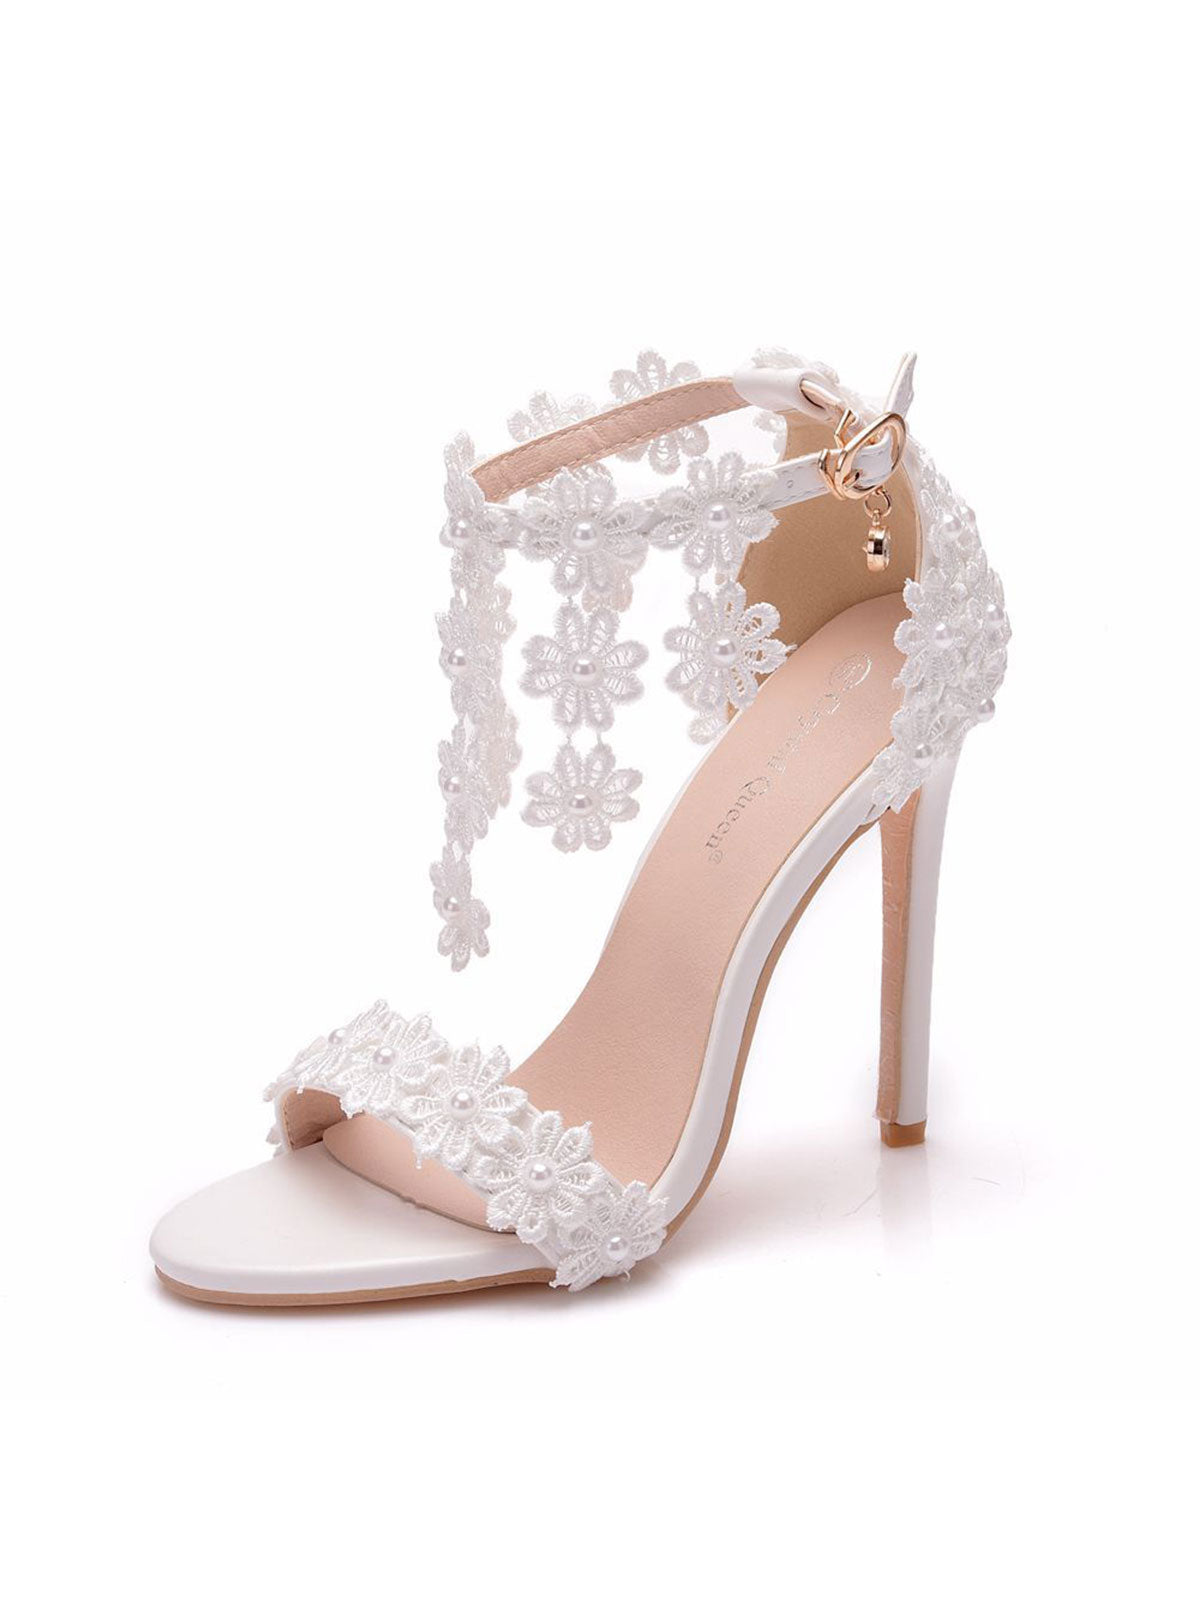 White Lace Flowers Tassels Open Toe Ankle-strap Ultra High Heels